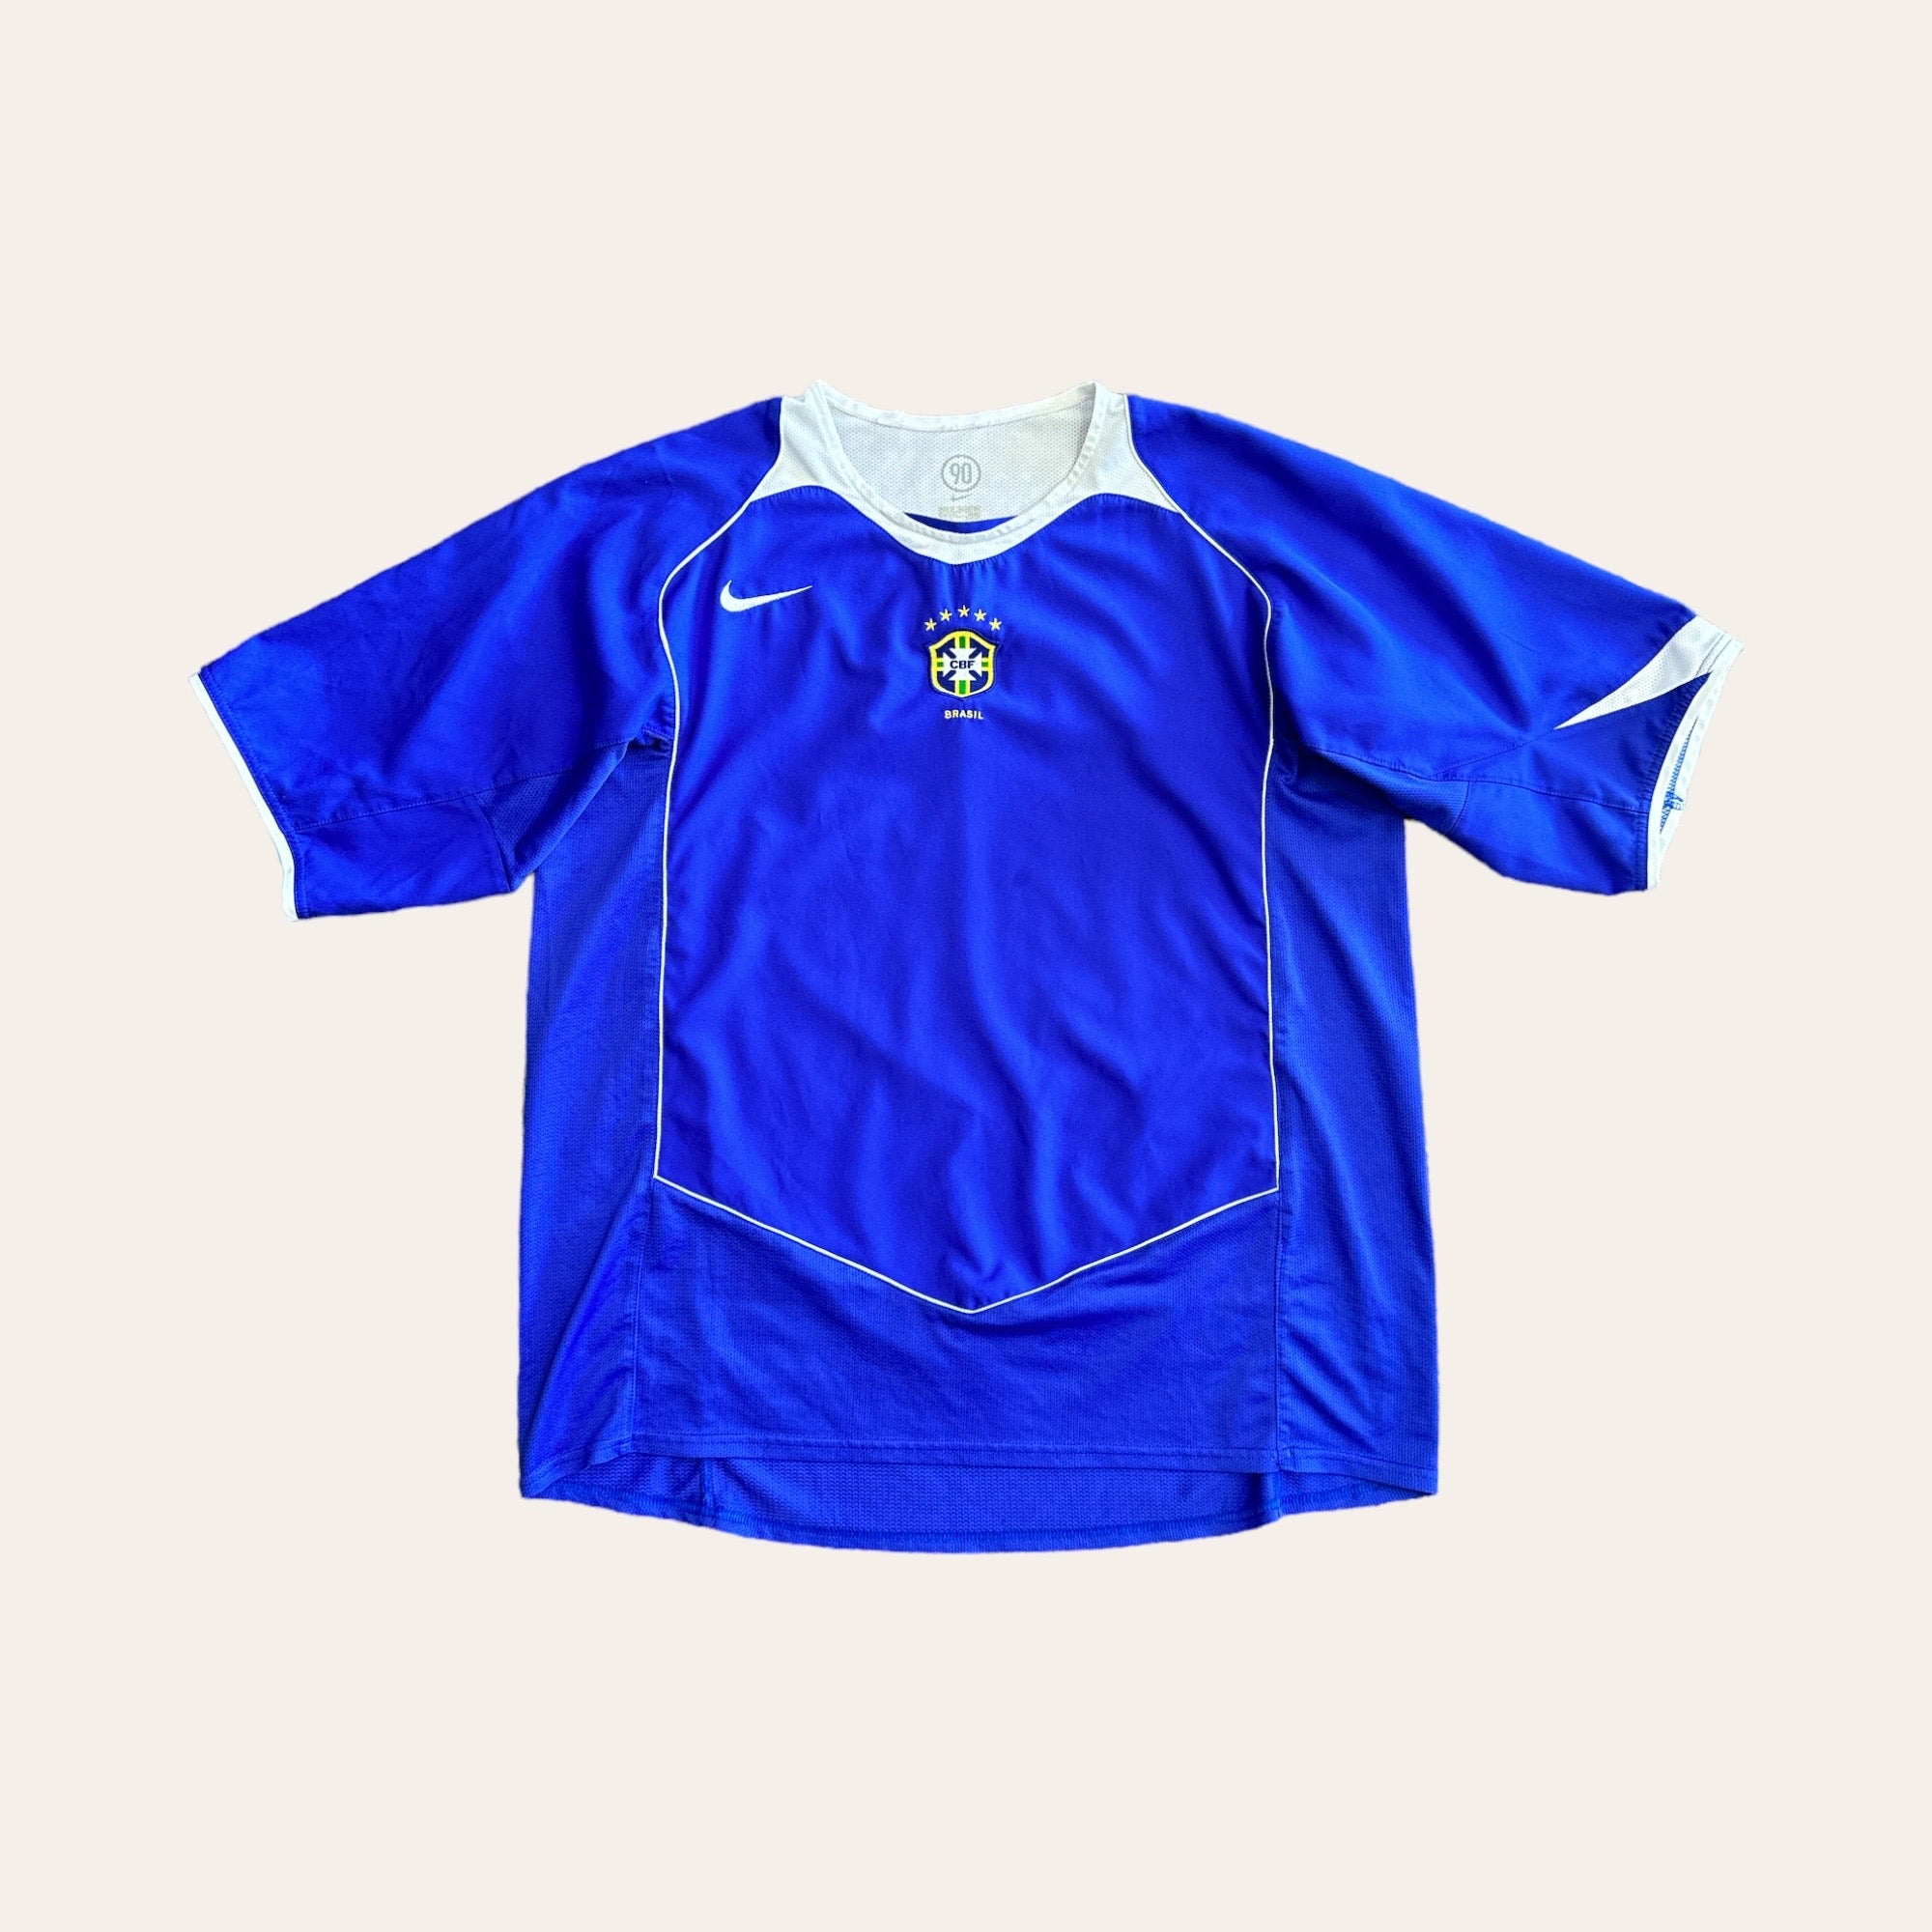 04/05 Brazil Away Kit Size XL